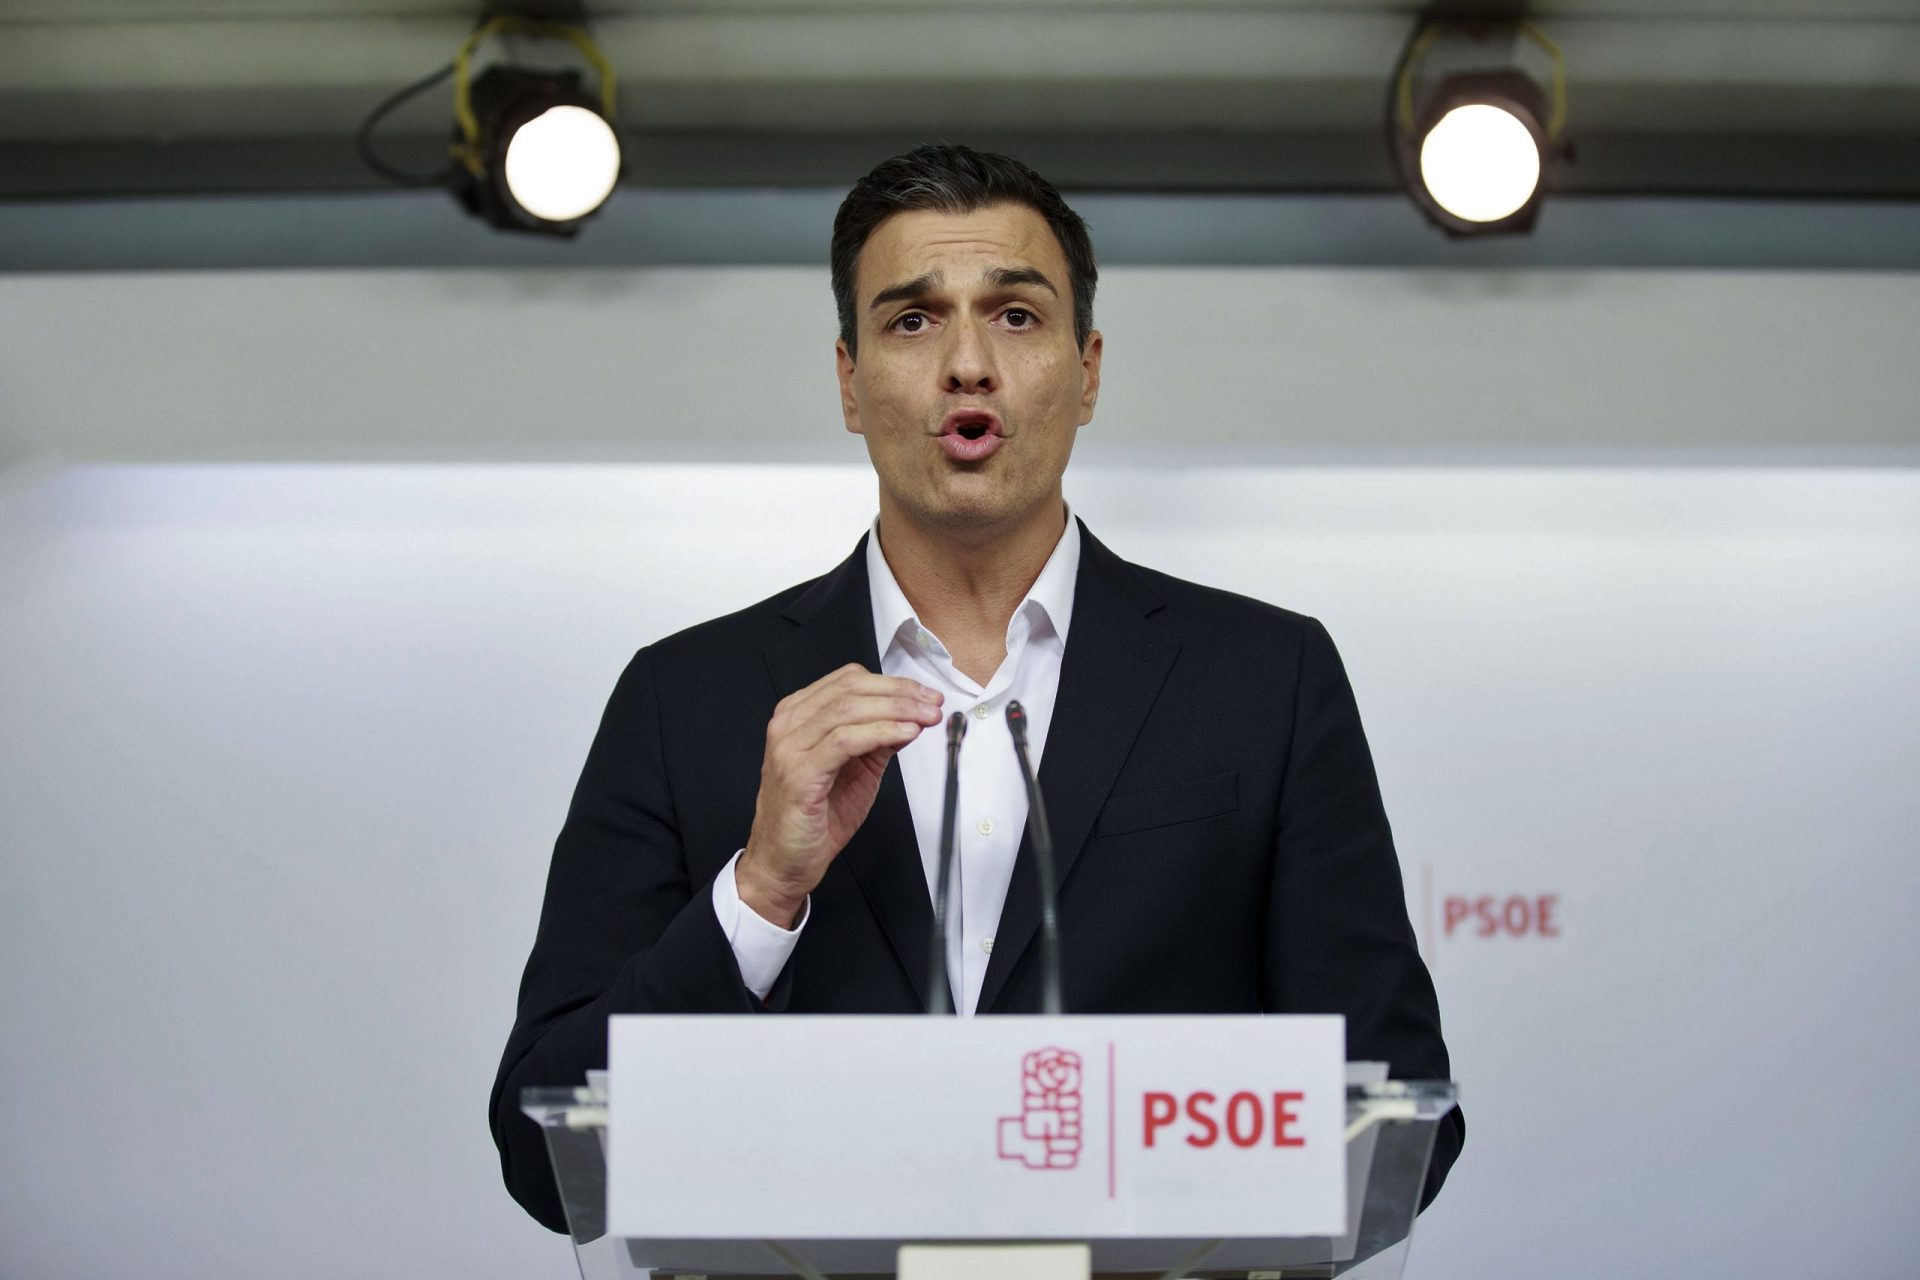 Novo Governo espanhol surge de acordo entre PSOE e partido de Puigdemont